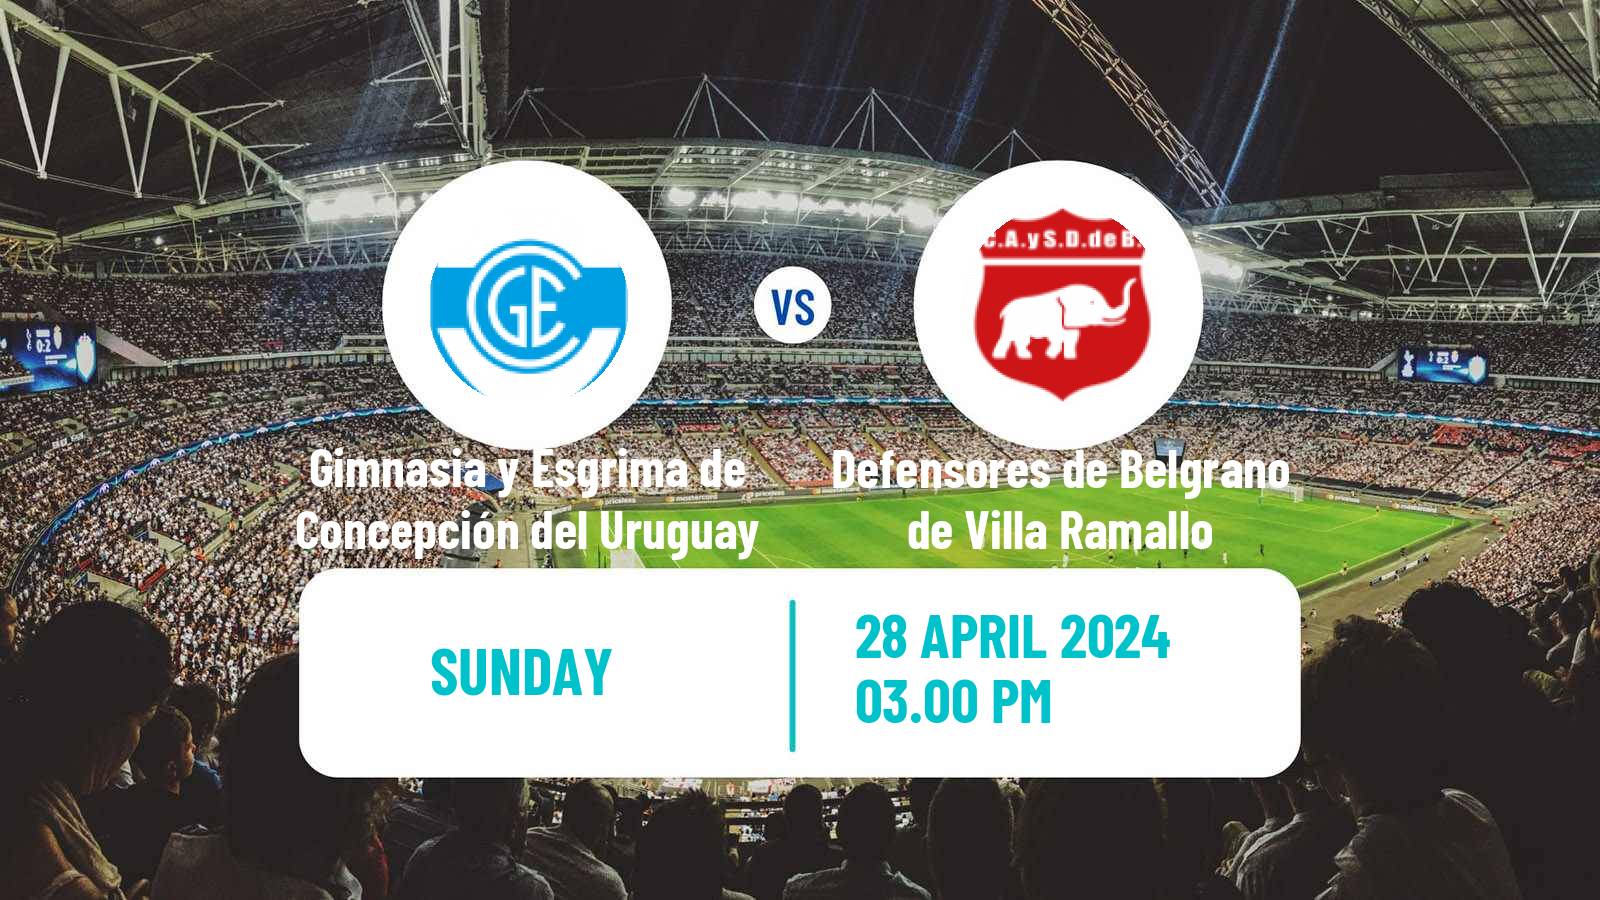 Soccer Argentinian Torneo Federal Gimnasia y Esgrima de Concepción del Uruguay - Defensores de Belgrano de Villa Ramallo